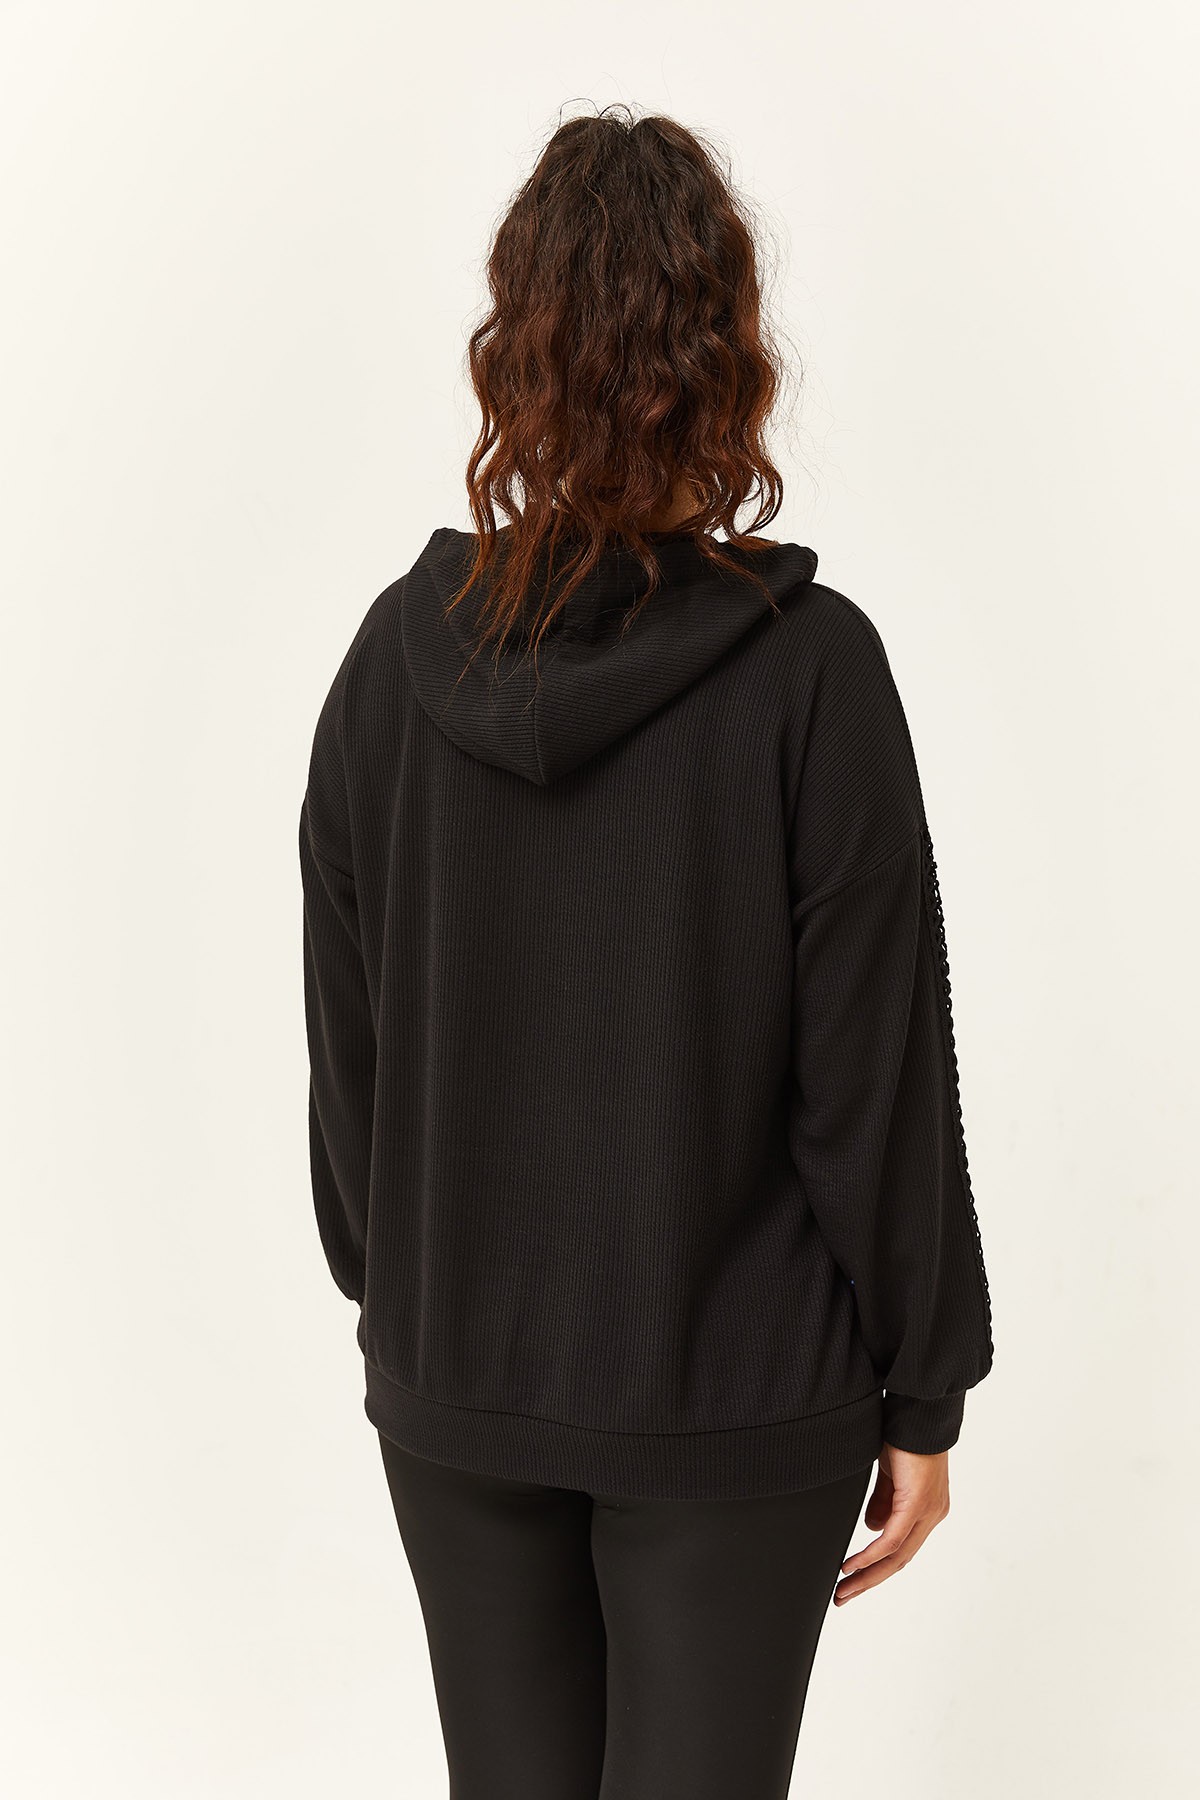 Kadın Büyük Beden Kolu Transparan Detay Sweatshirt